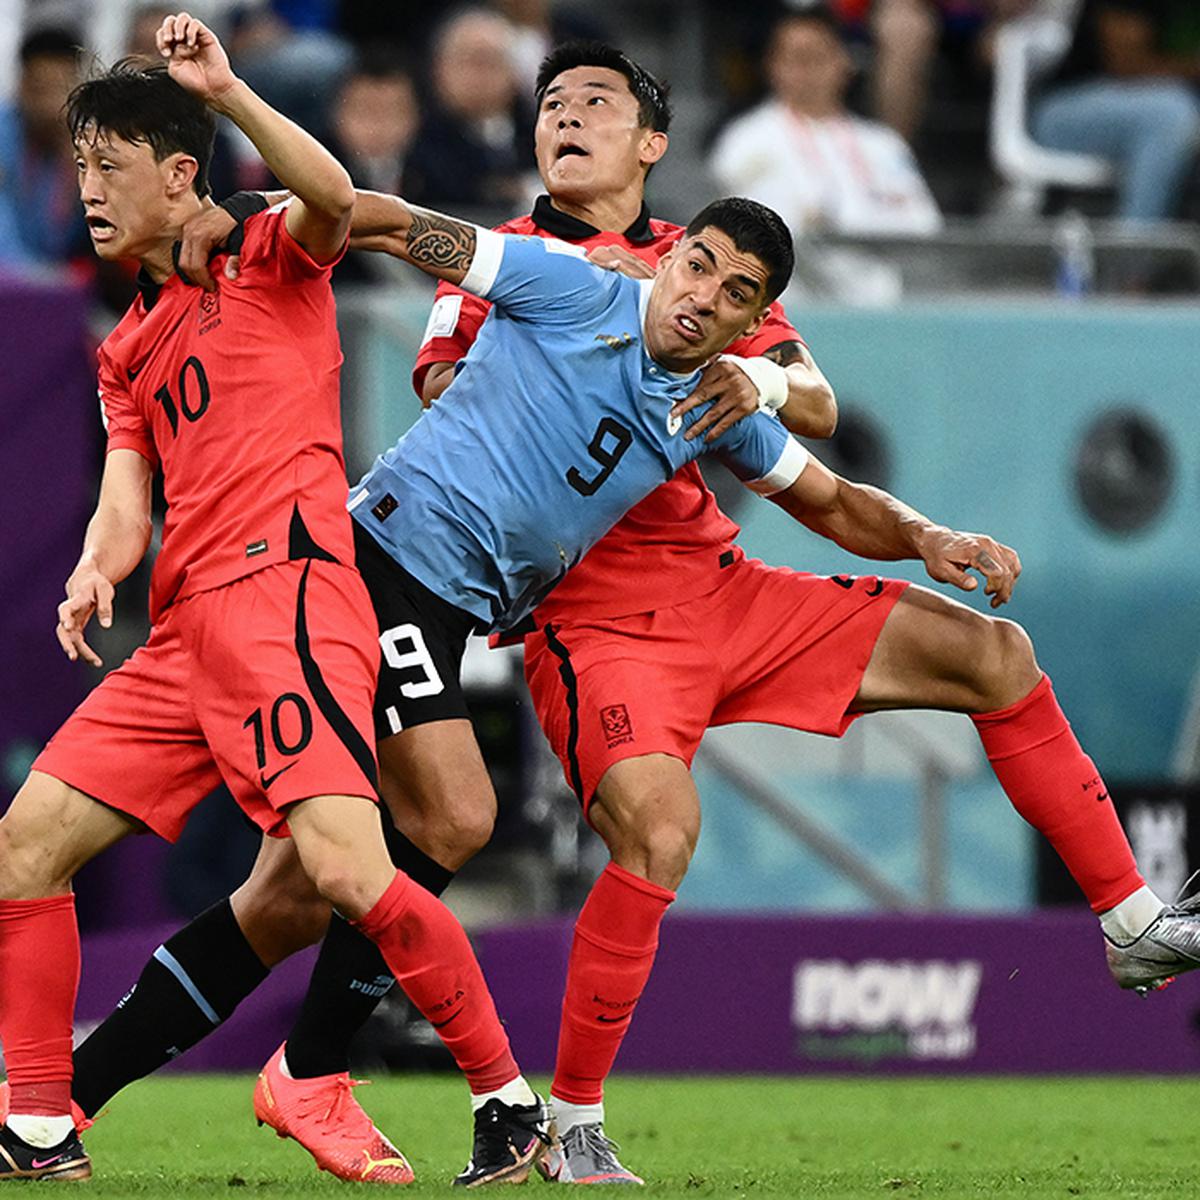 El fútbol uruguayo, al rojo vivo - Diario Hoy En la noticia